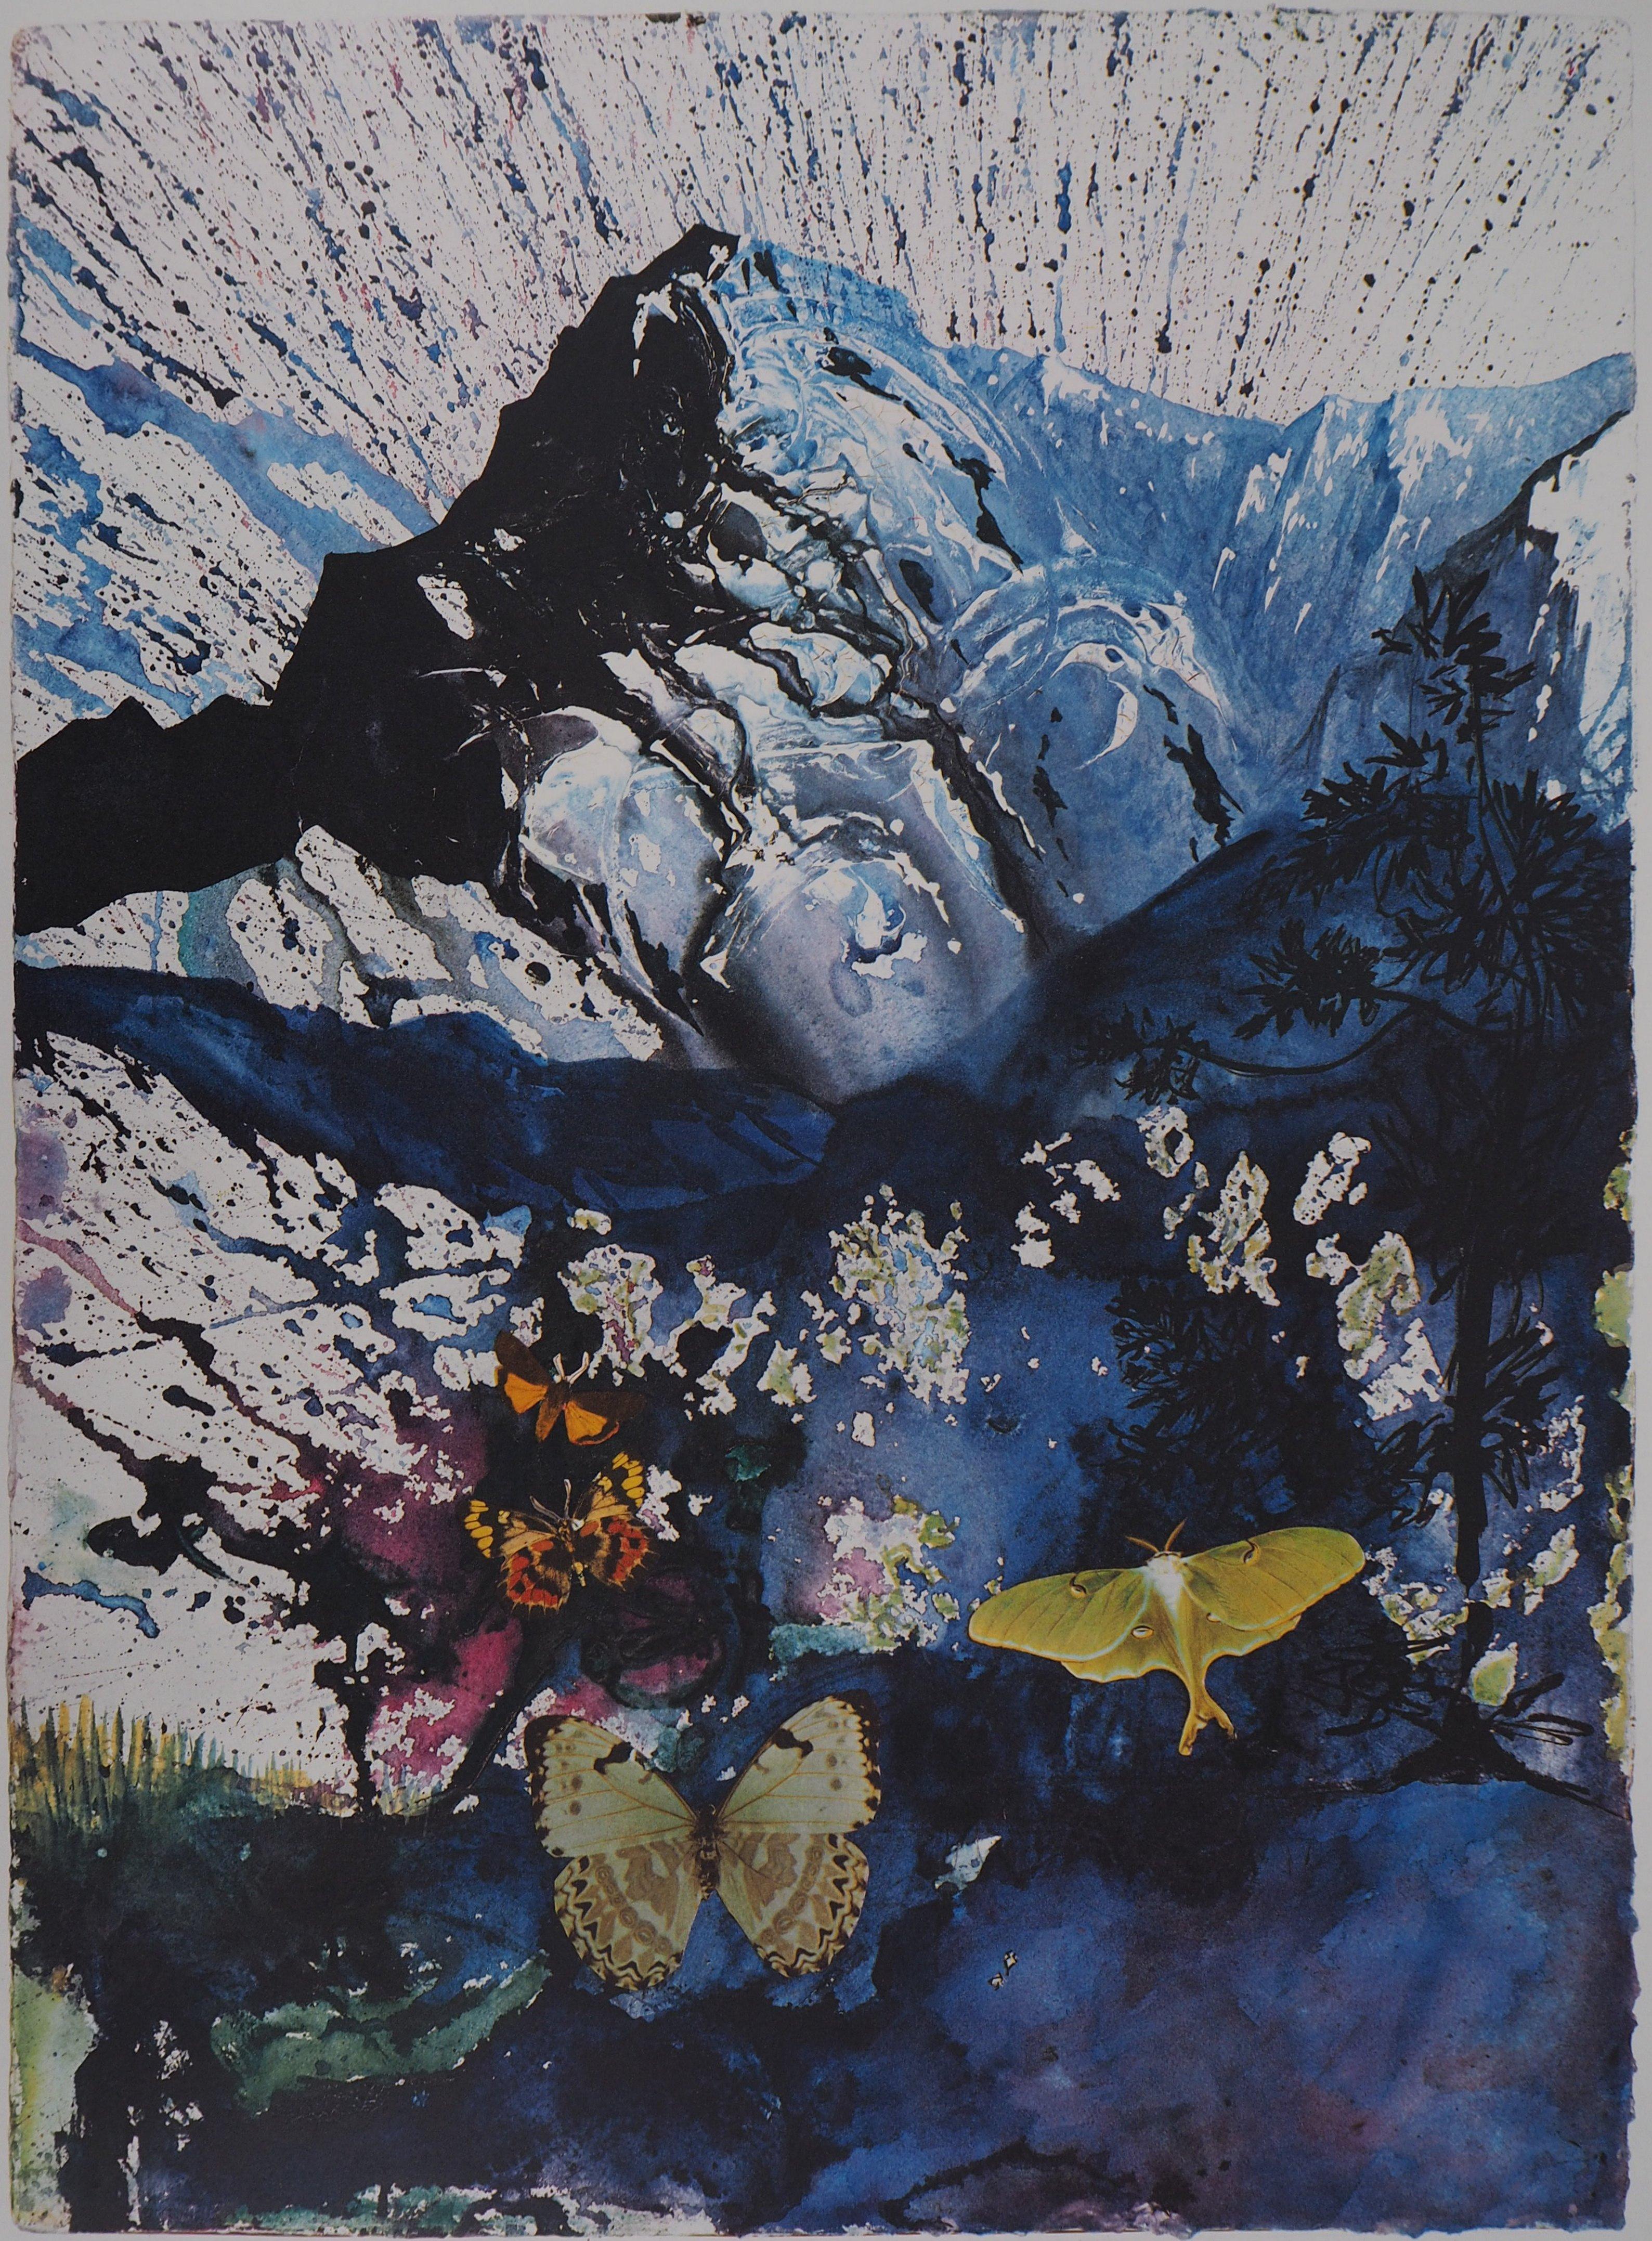 Butterfly suite : Les Alpes - heliogravure - 1969 (Field #69-2 C) - Surrealist Print by Salvador Dalí